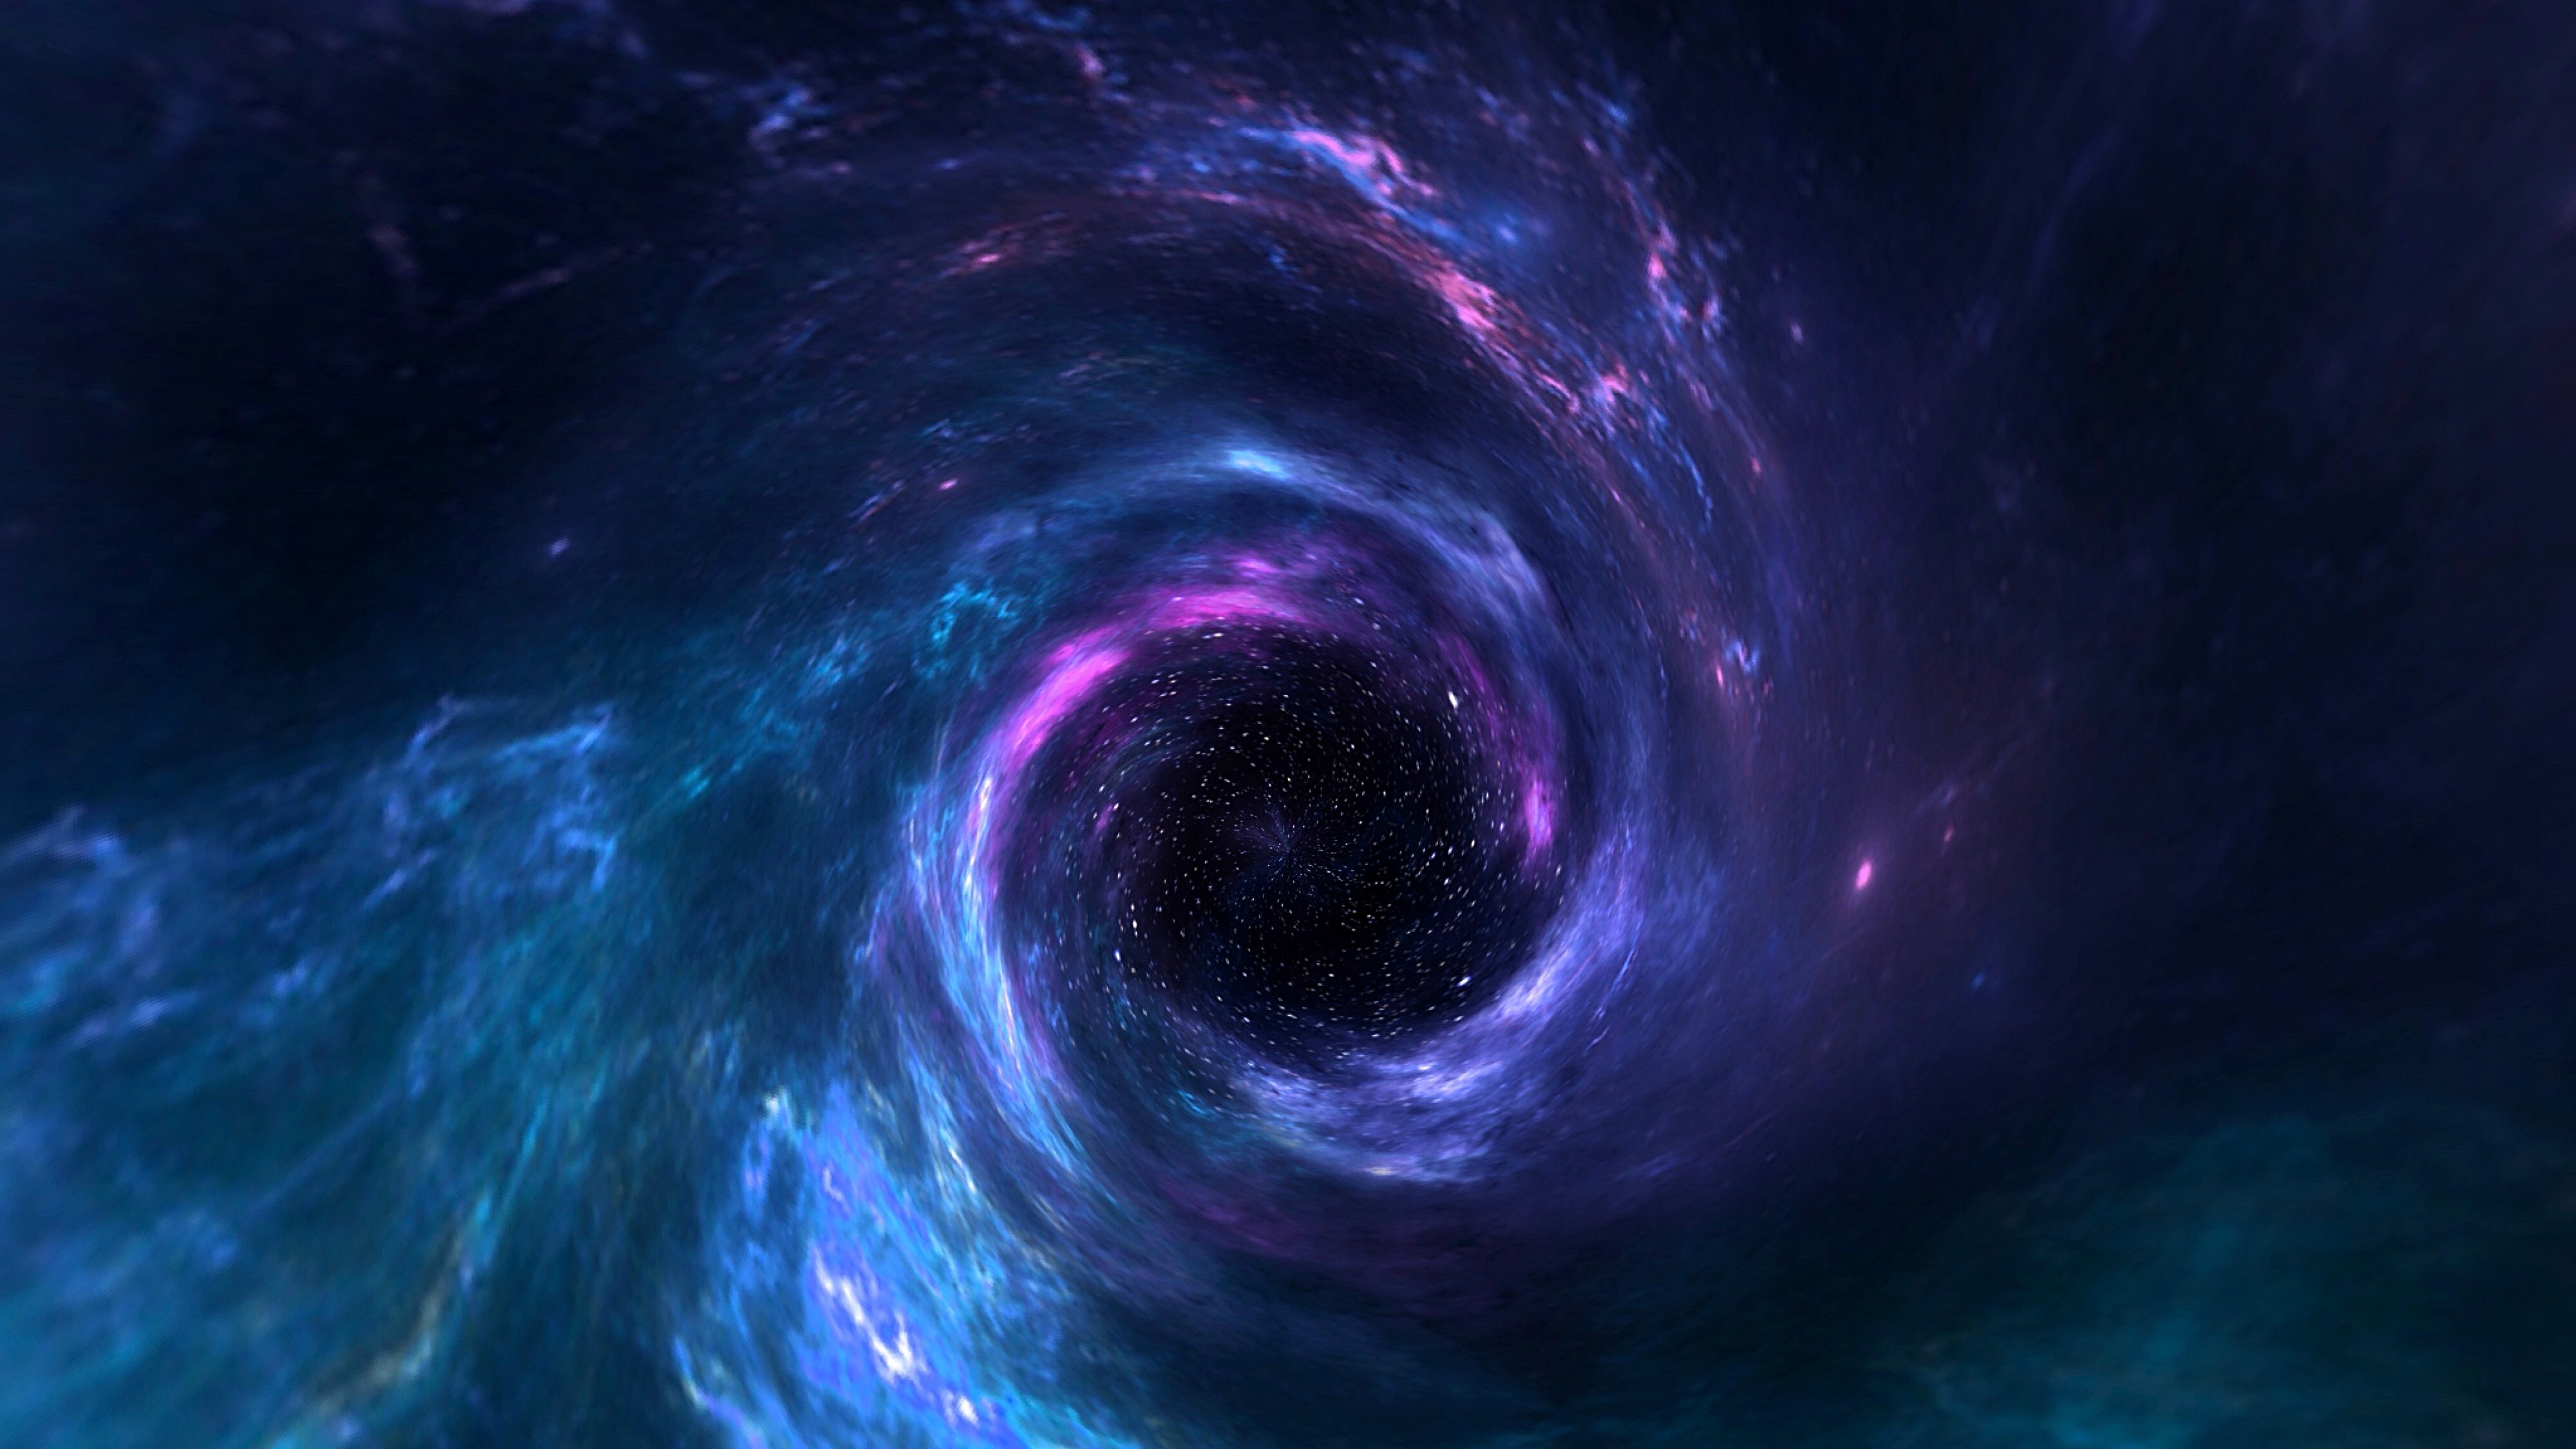 Comment les trous noirs se forment-ils ? Samuel, 10 ans - Images Doc